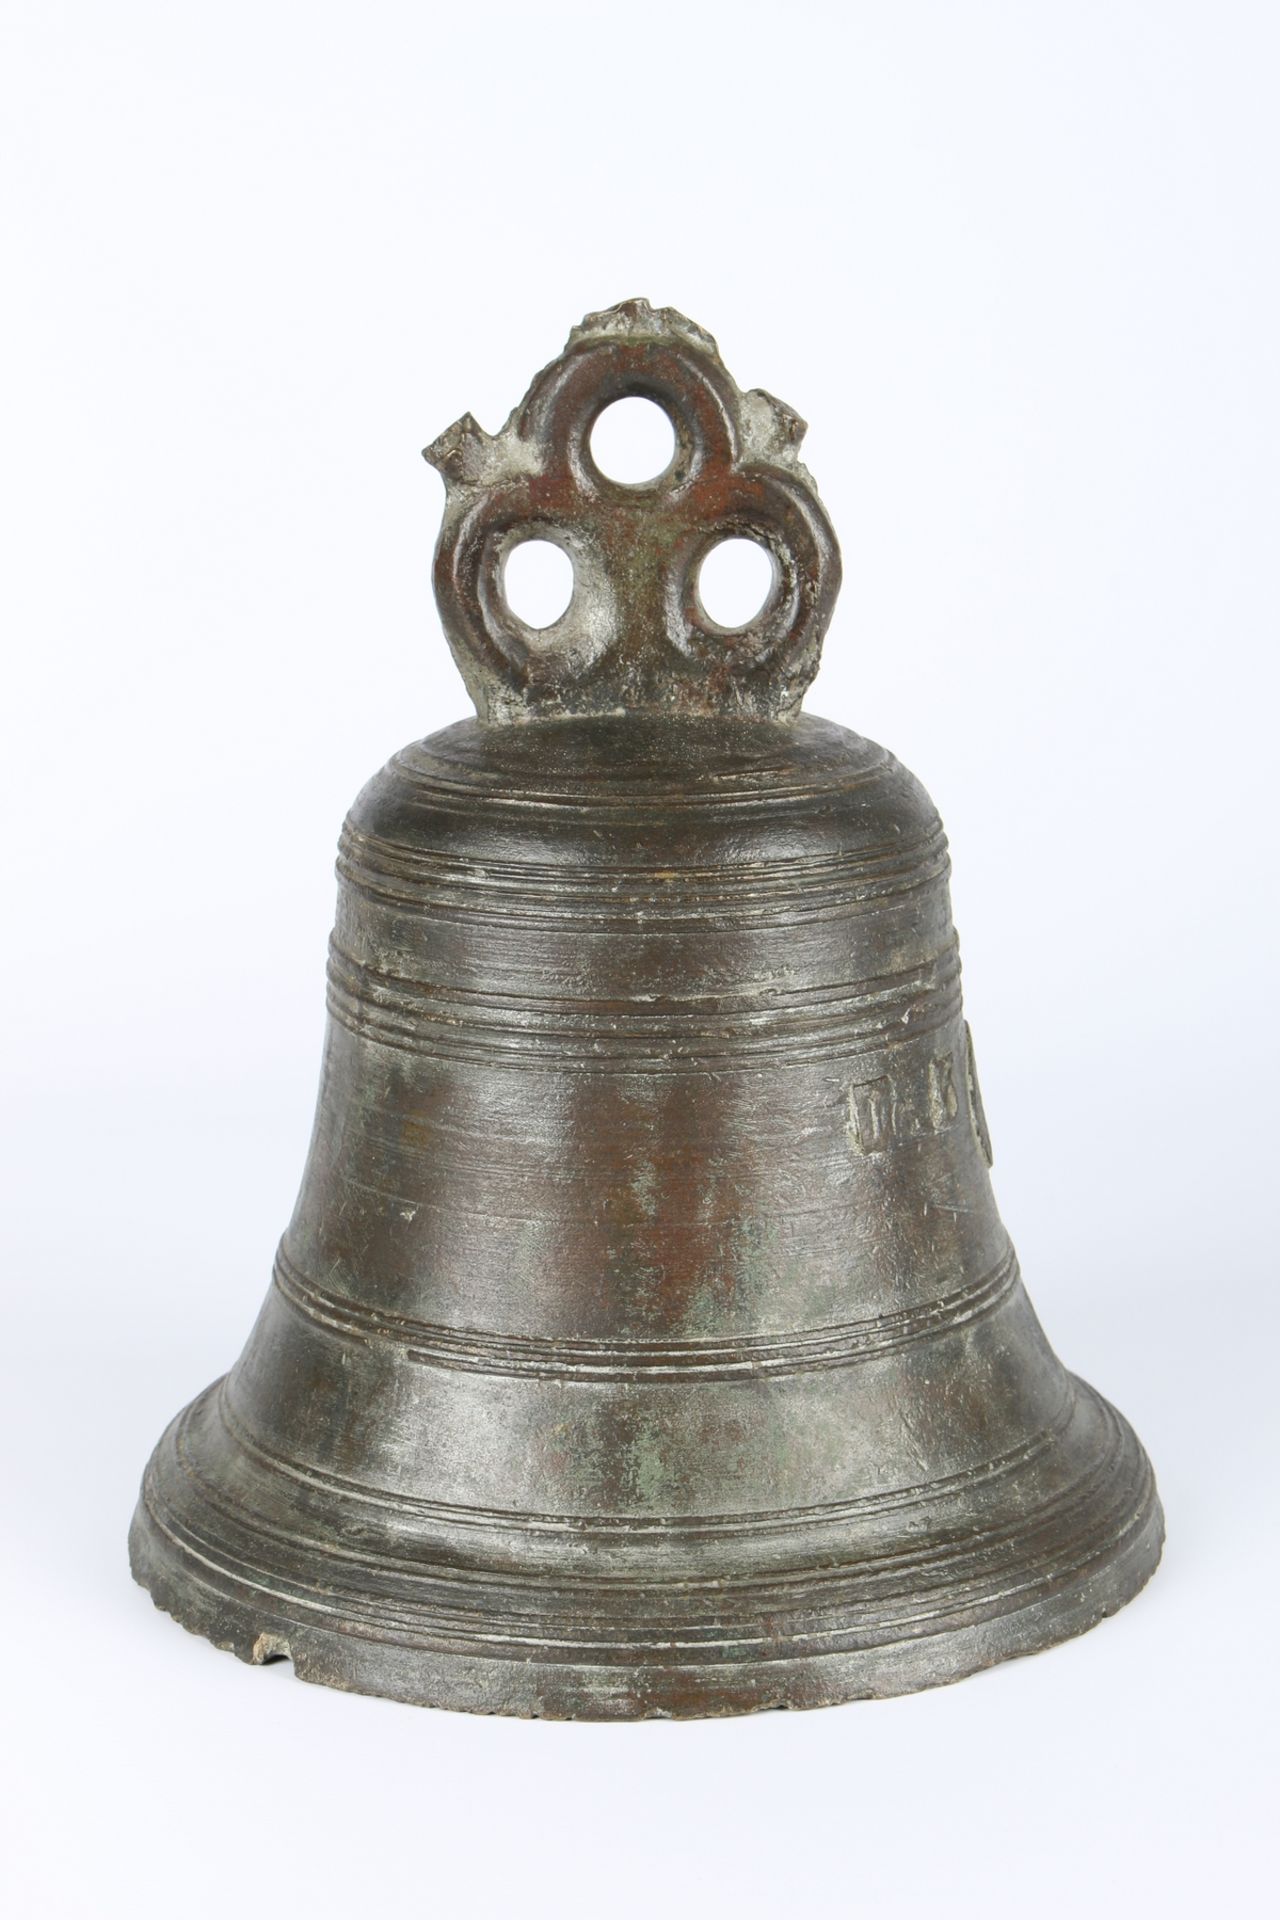 Historische Bronze Glocke, historic bronze bell, - Image 2 of 6